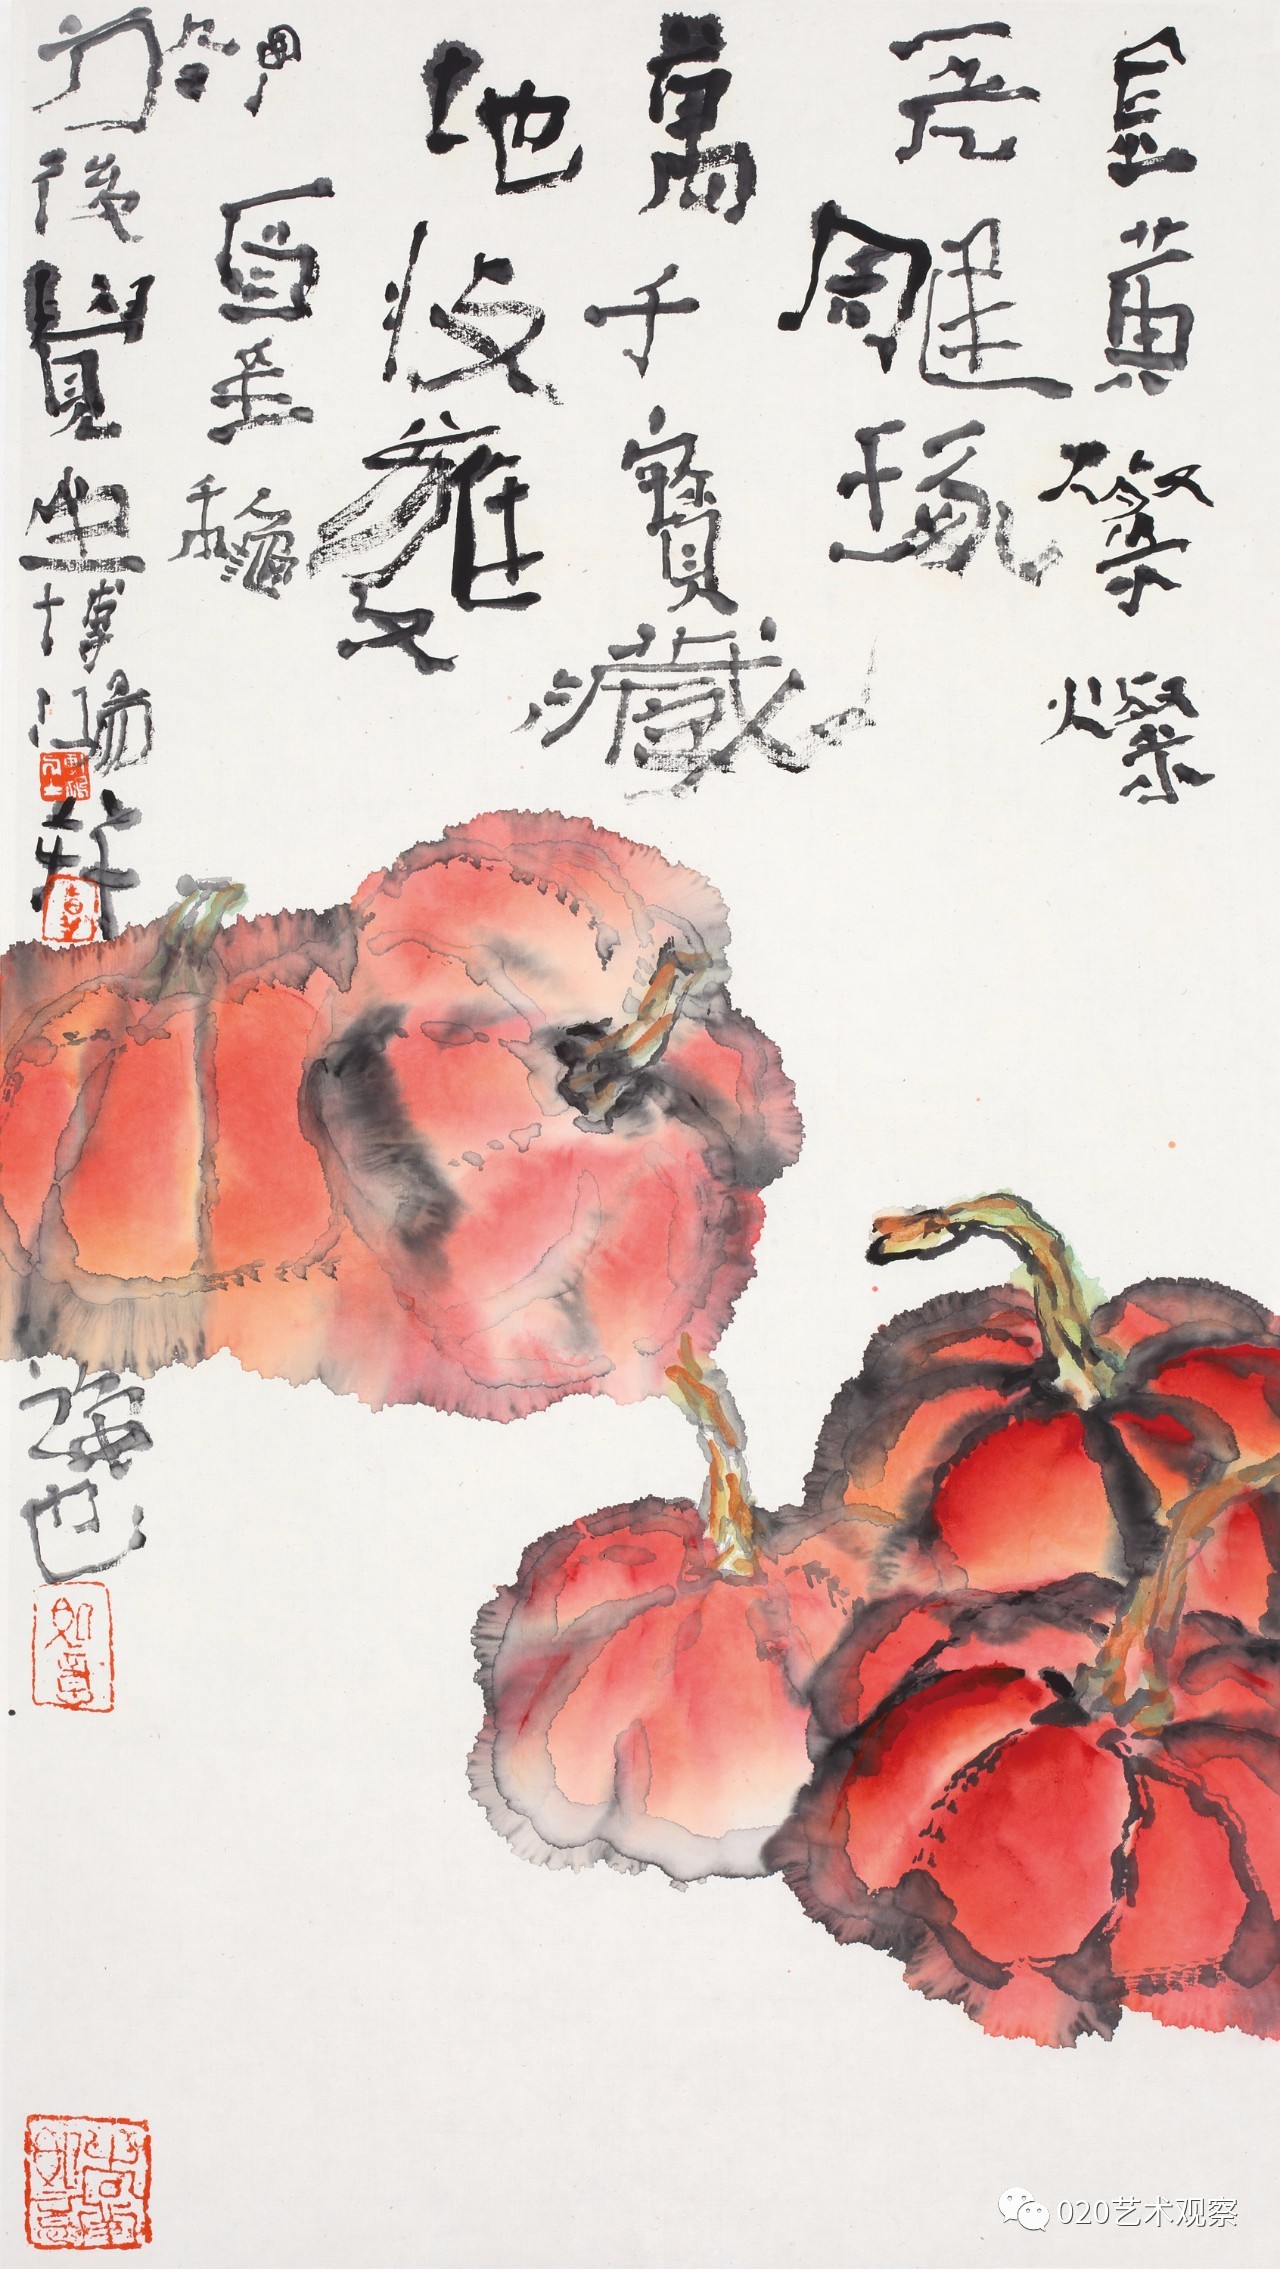 写意精神61贾博鸿国画作品展1月21日15时在广州艺博院小佑轩开幕